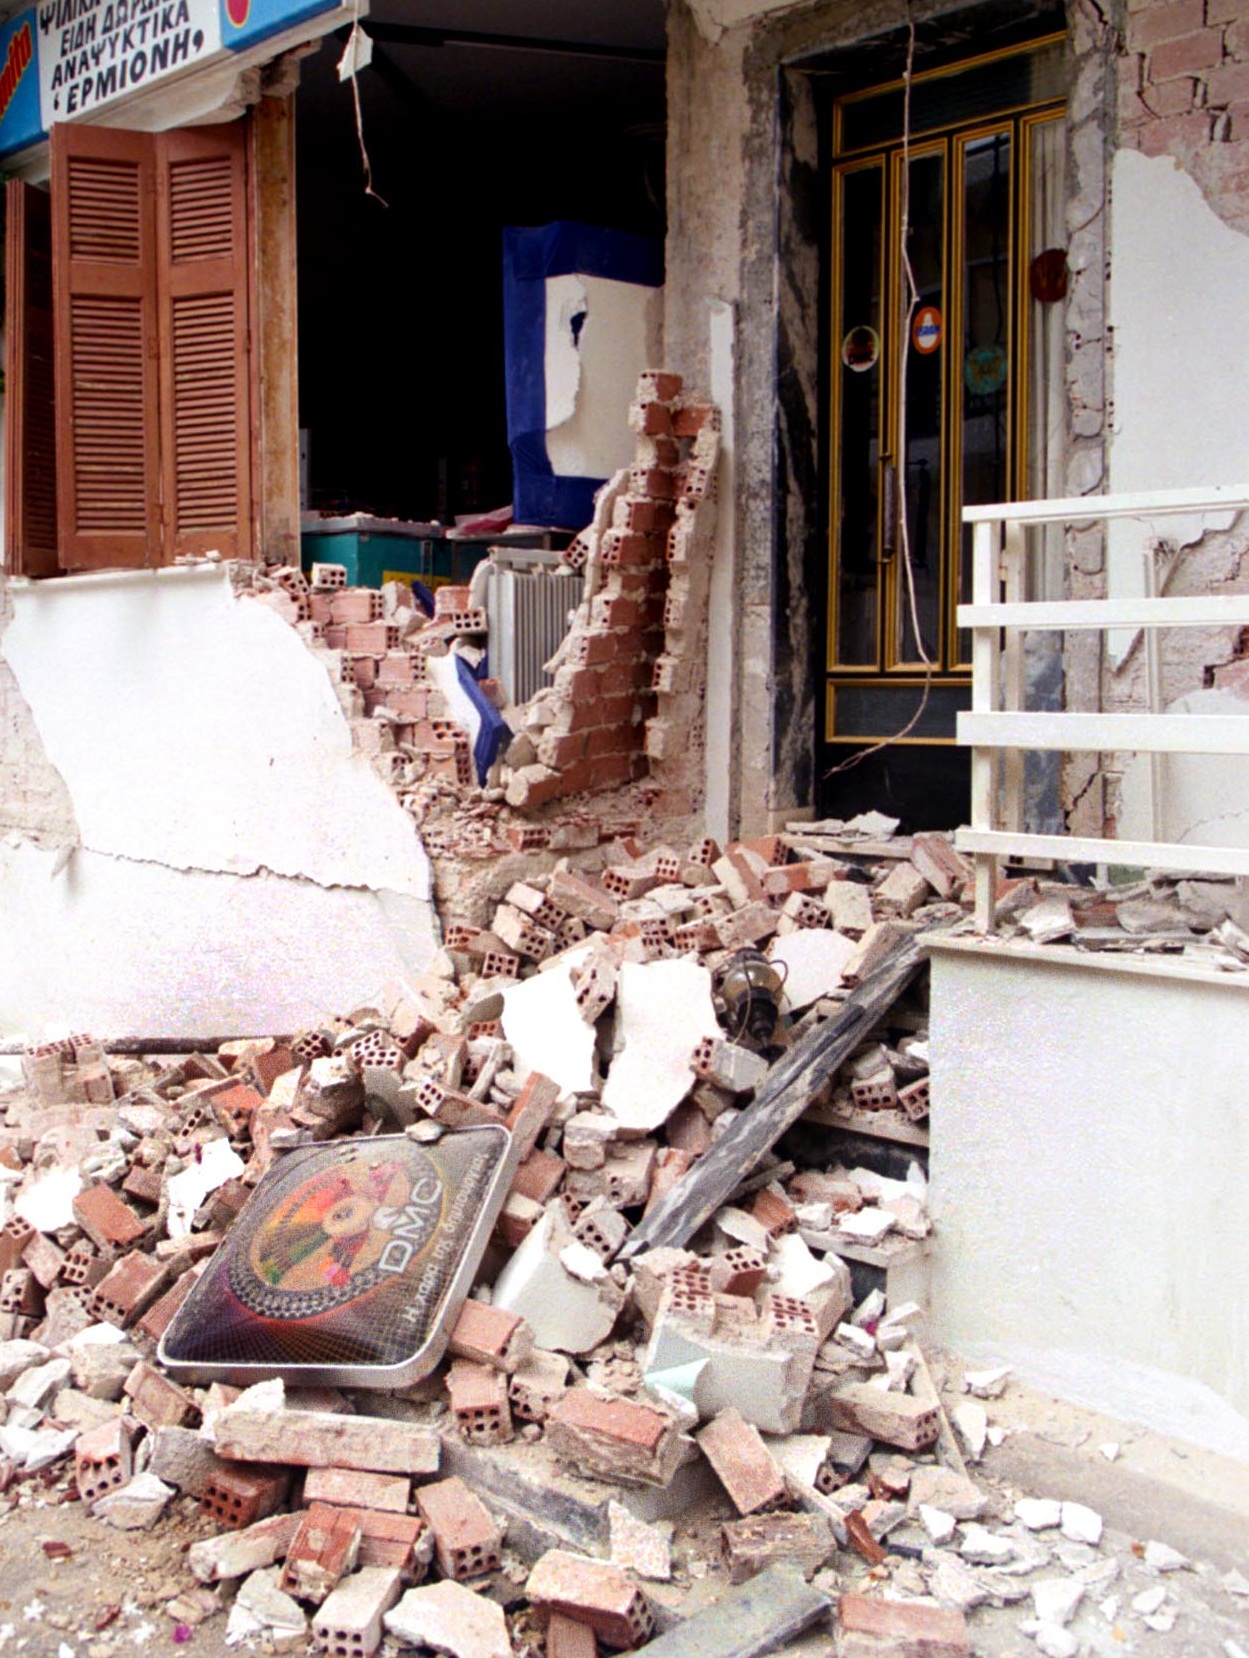 Σπίτια και καταστήματα κοντά στο επίκεντρο κατέρρευσαν - Λιόσια